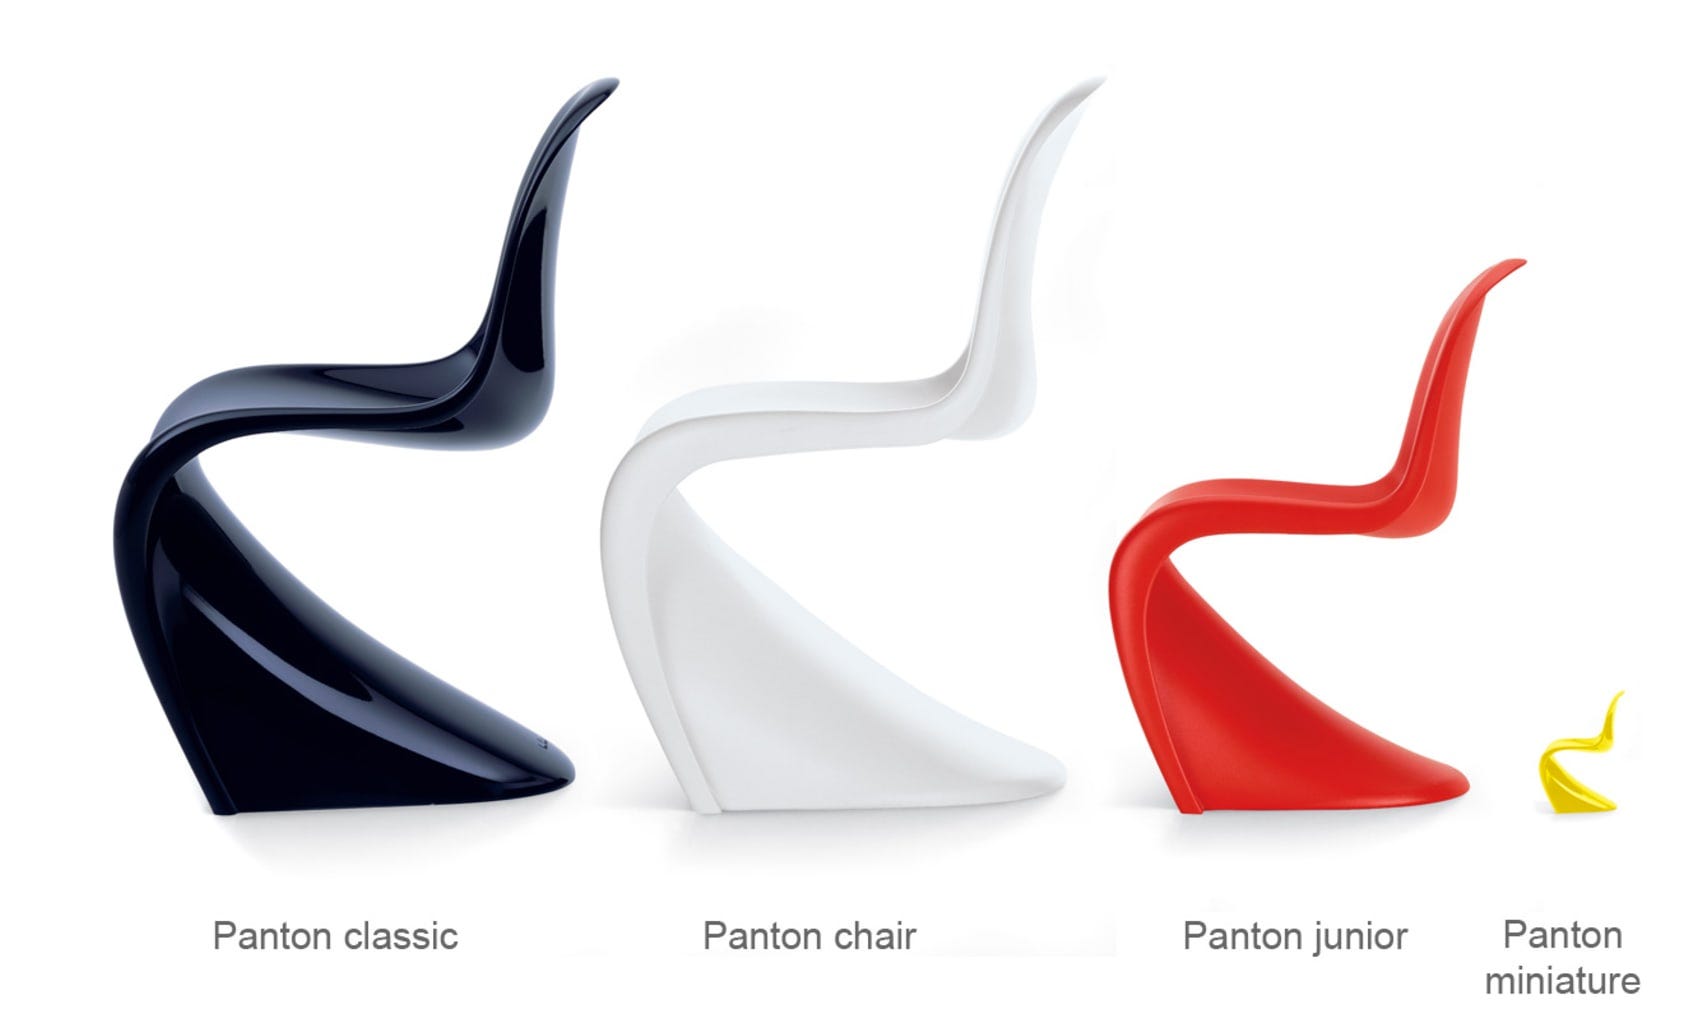 Design Icons The Panton Chair Dfordesign Medium